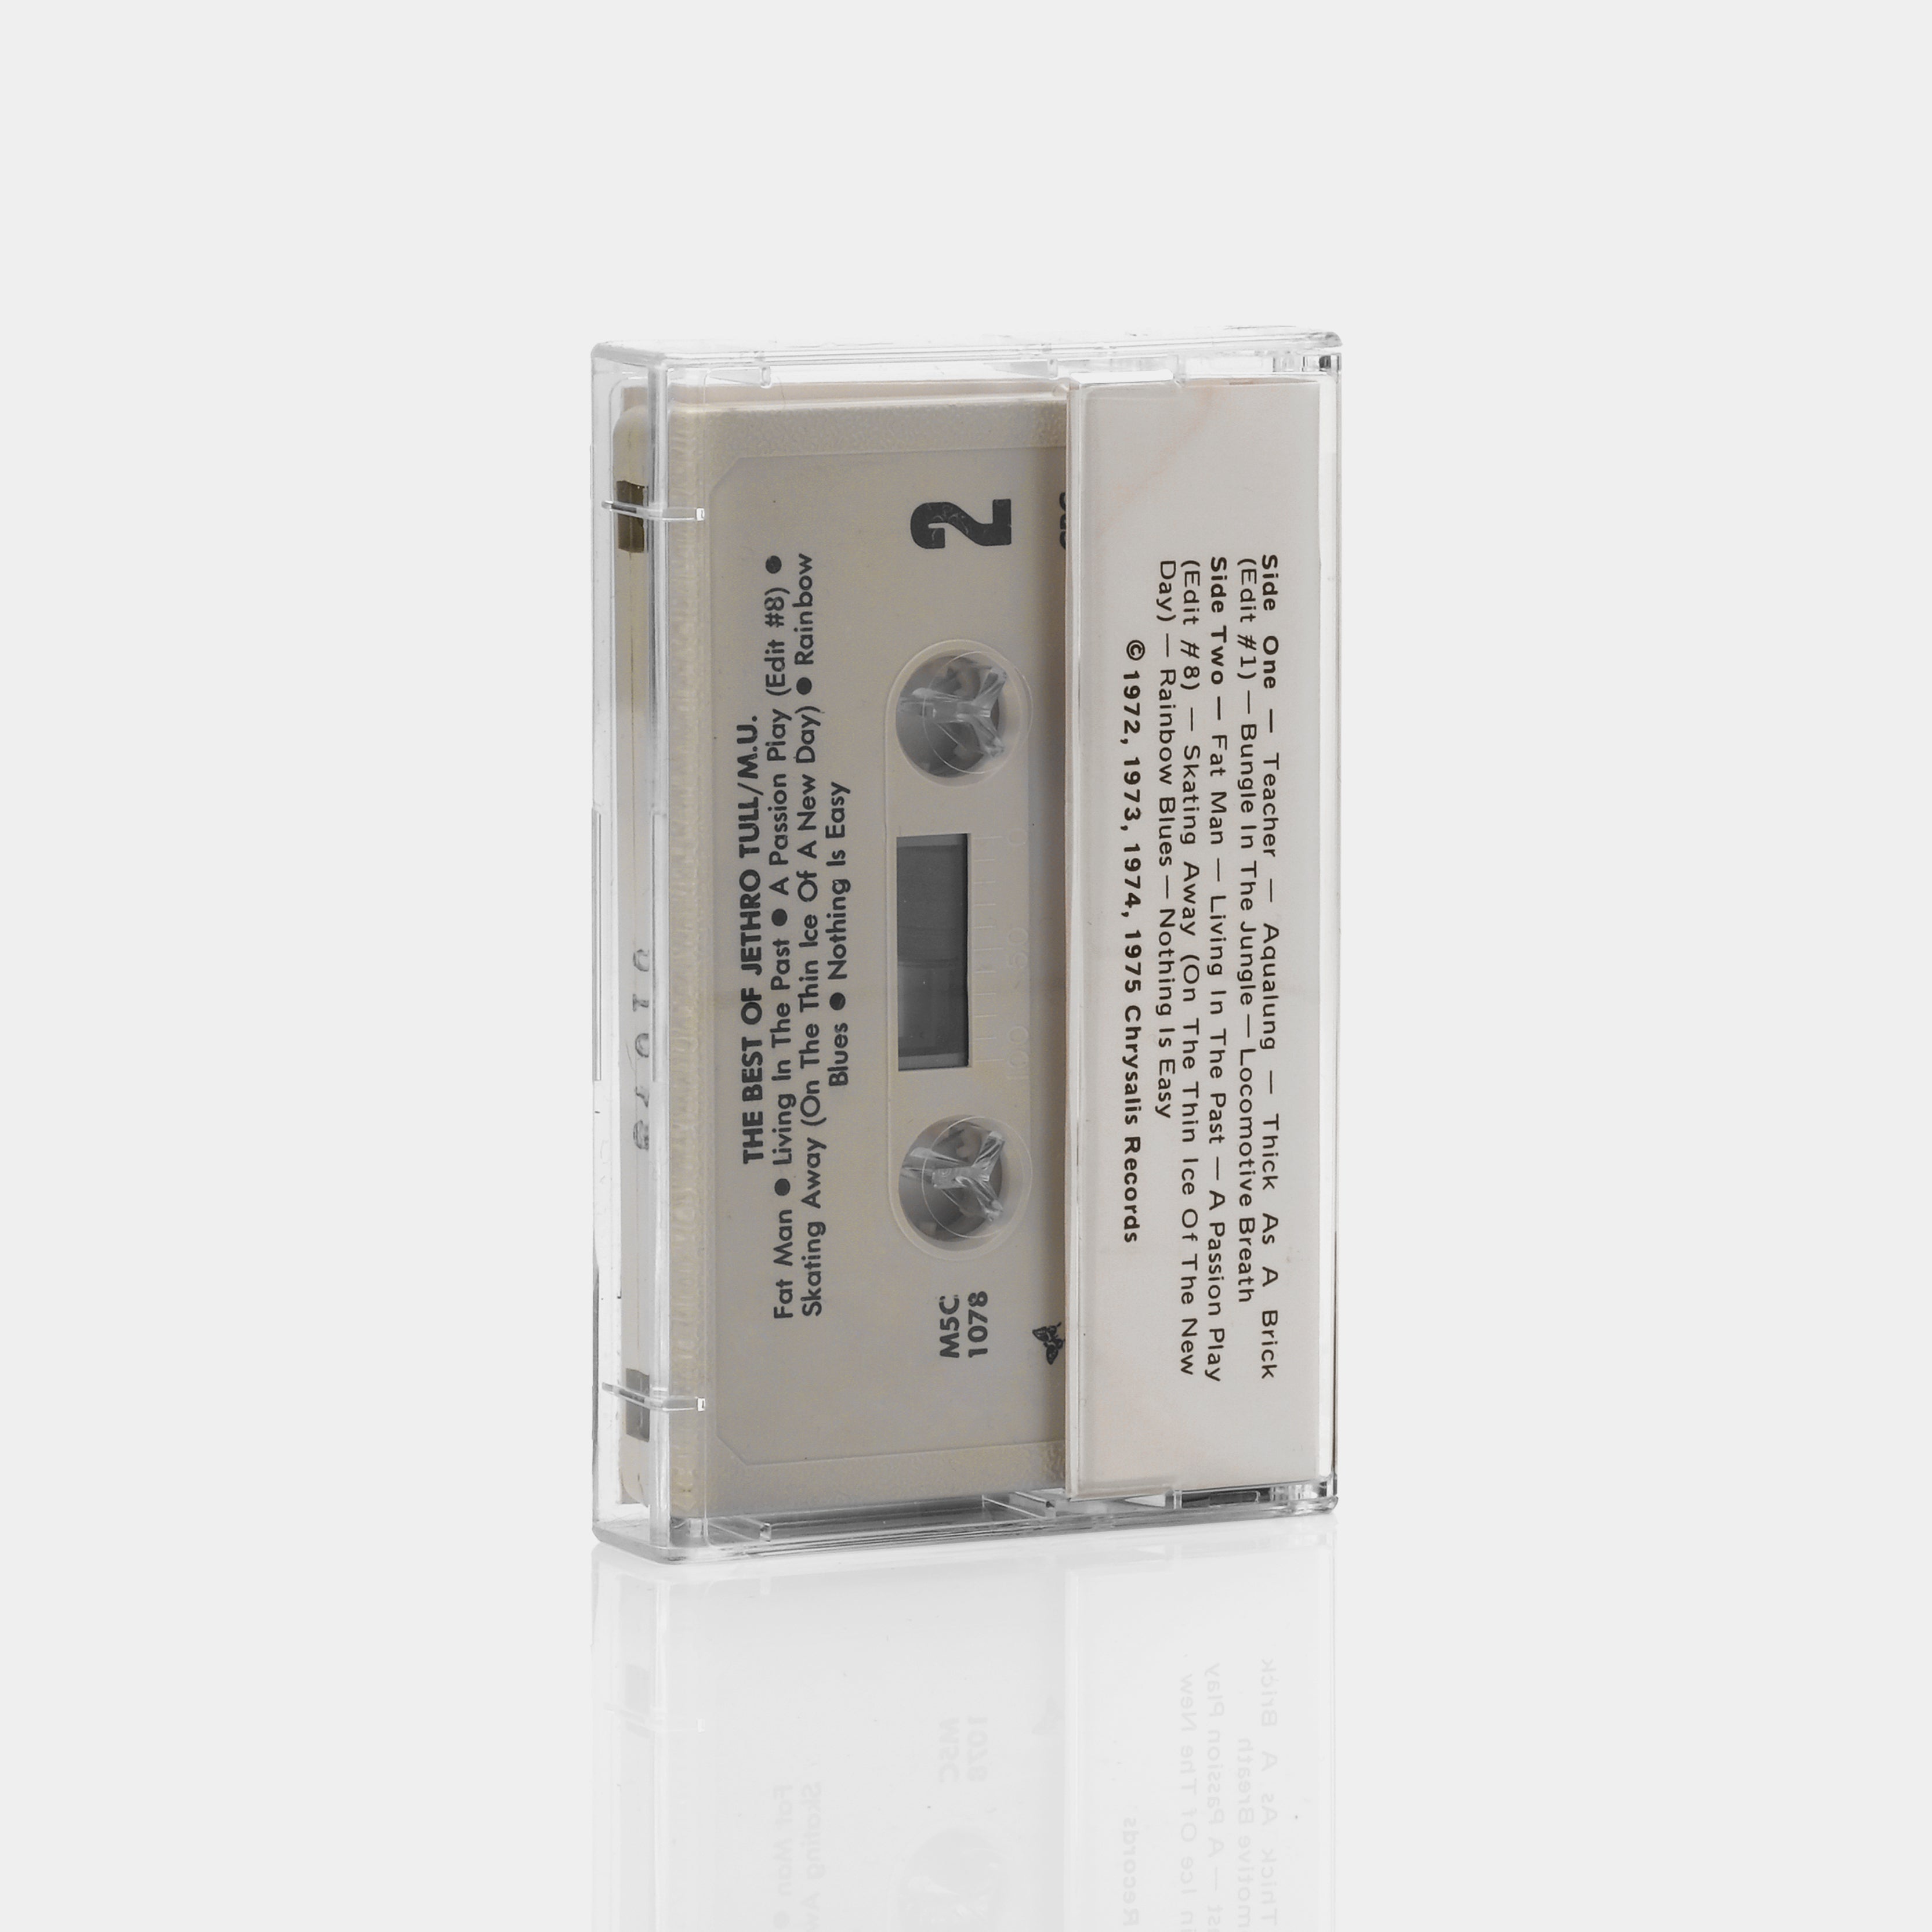 Jethro Tull - The Best Of Jethro Tull - M.U. Cassette Tape